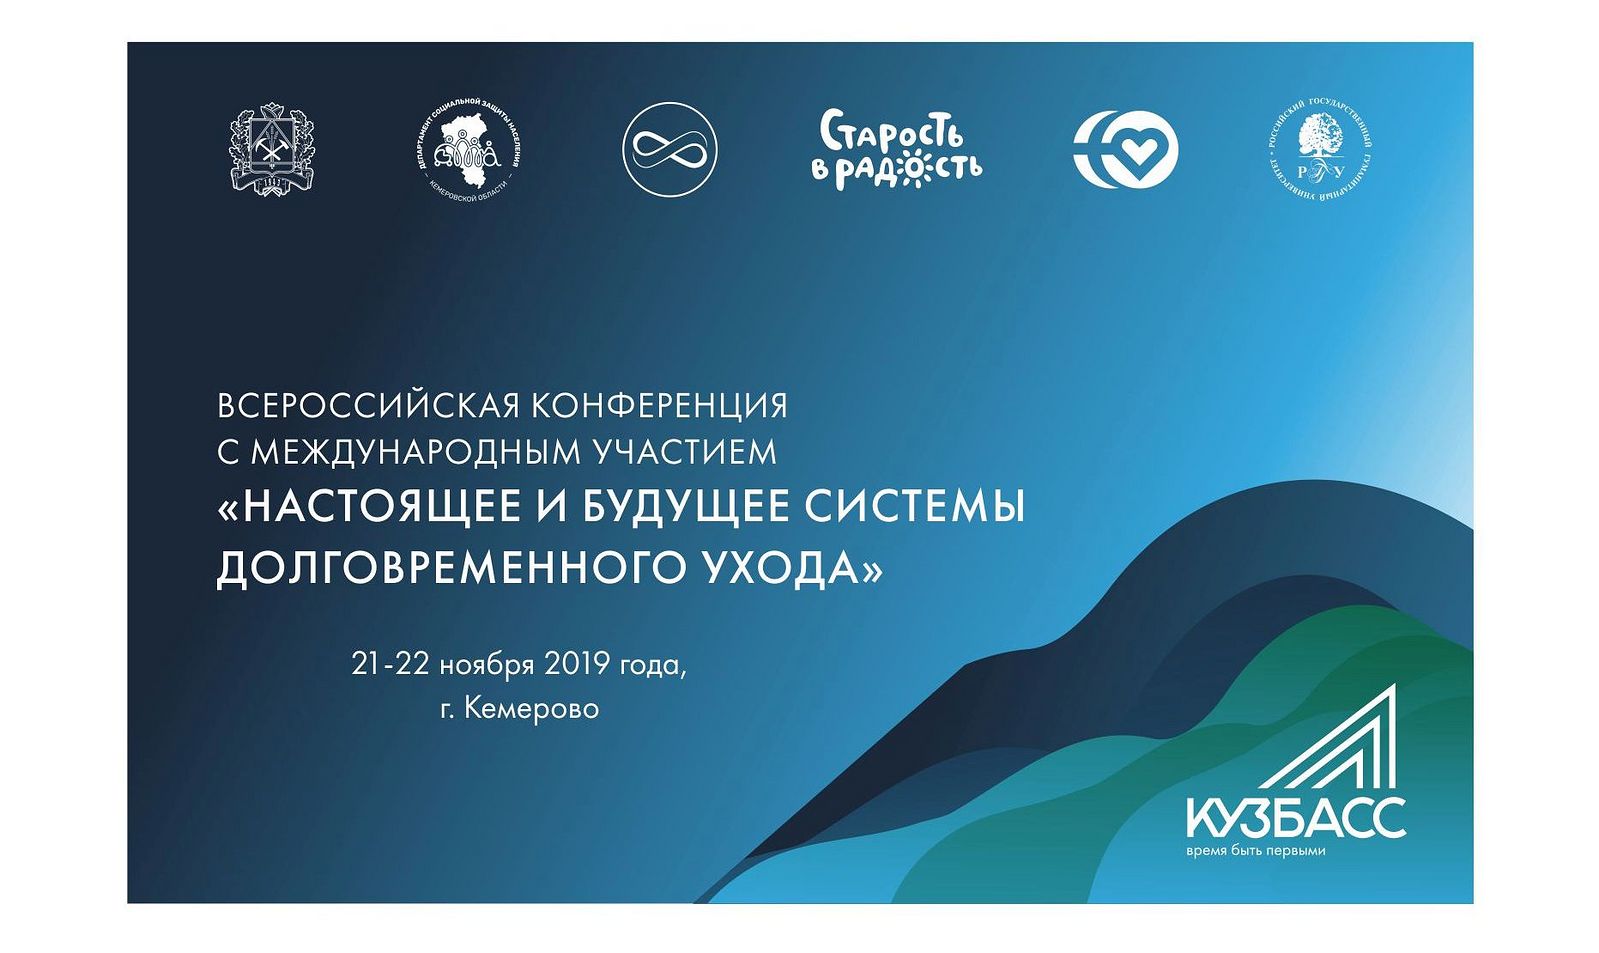 В Кемерово пройдет Всероссийская конференция «Настоящее и будущее системы долговременного ухода»